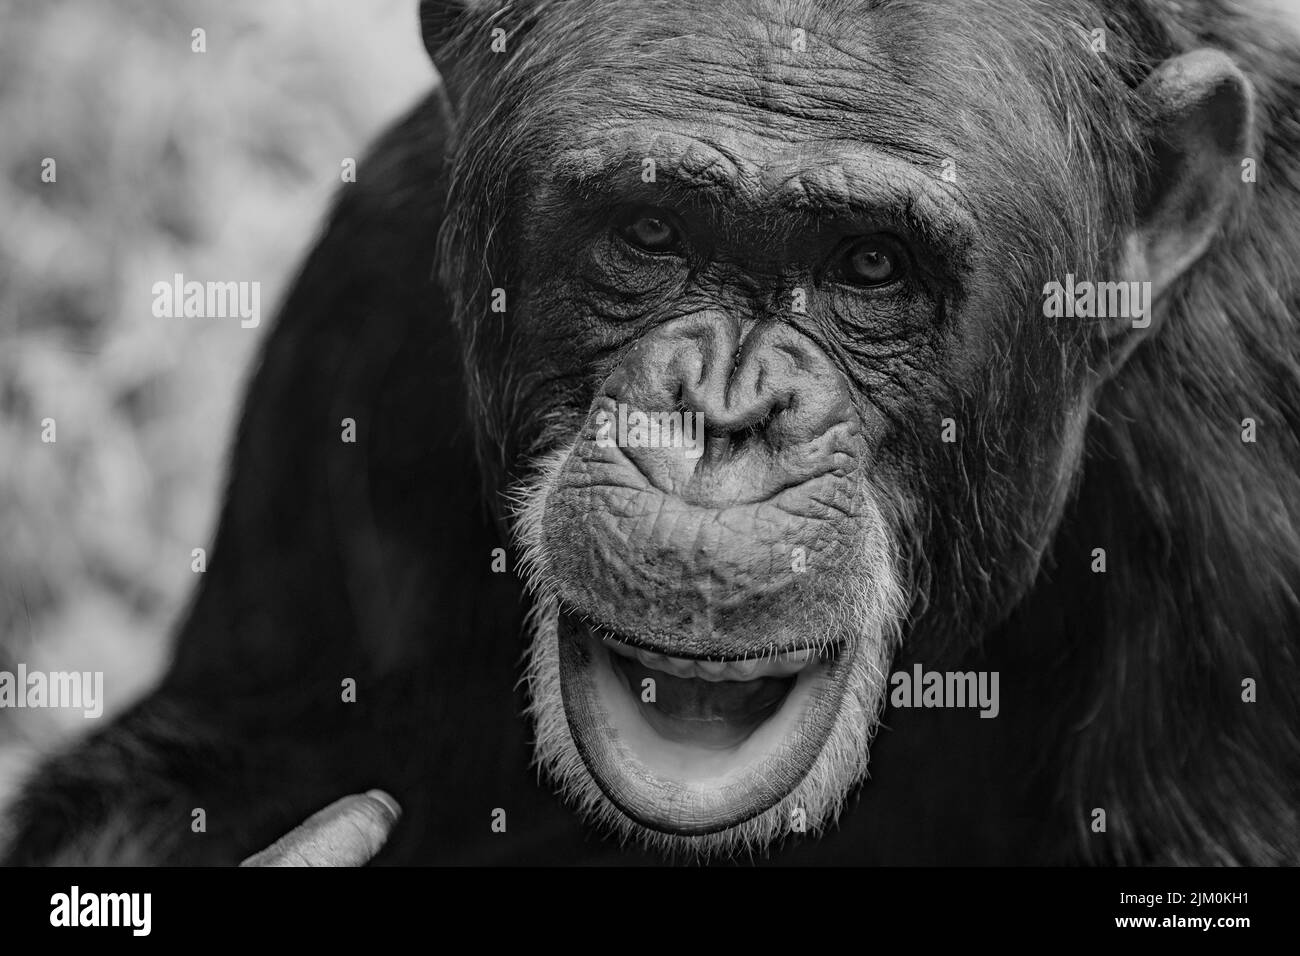 Un primo piano in scala di grigi dello scimpanzé, Pan Troglodytes. Ritratto animale. Foto Stock